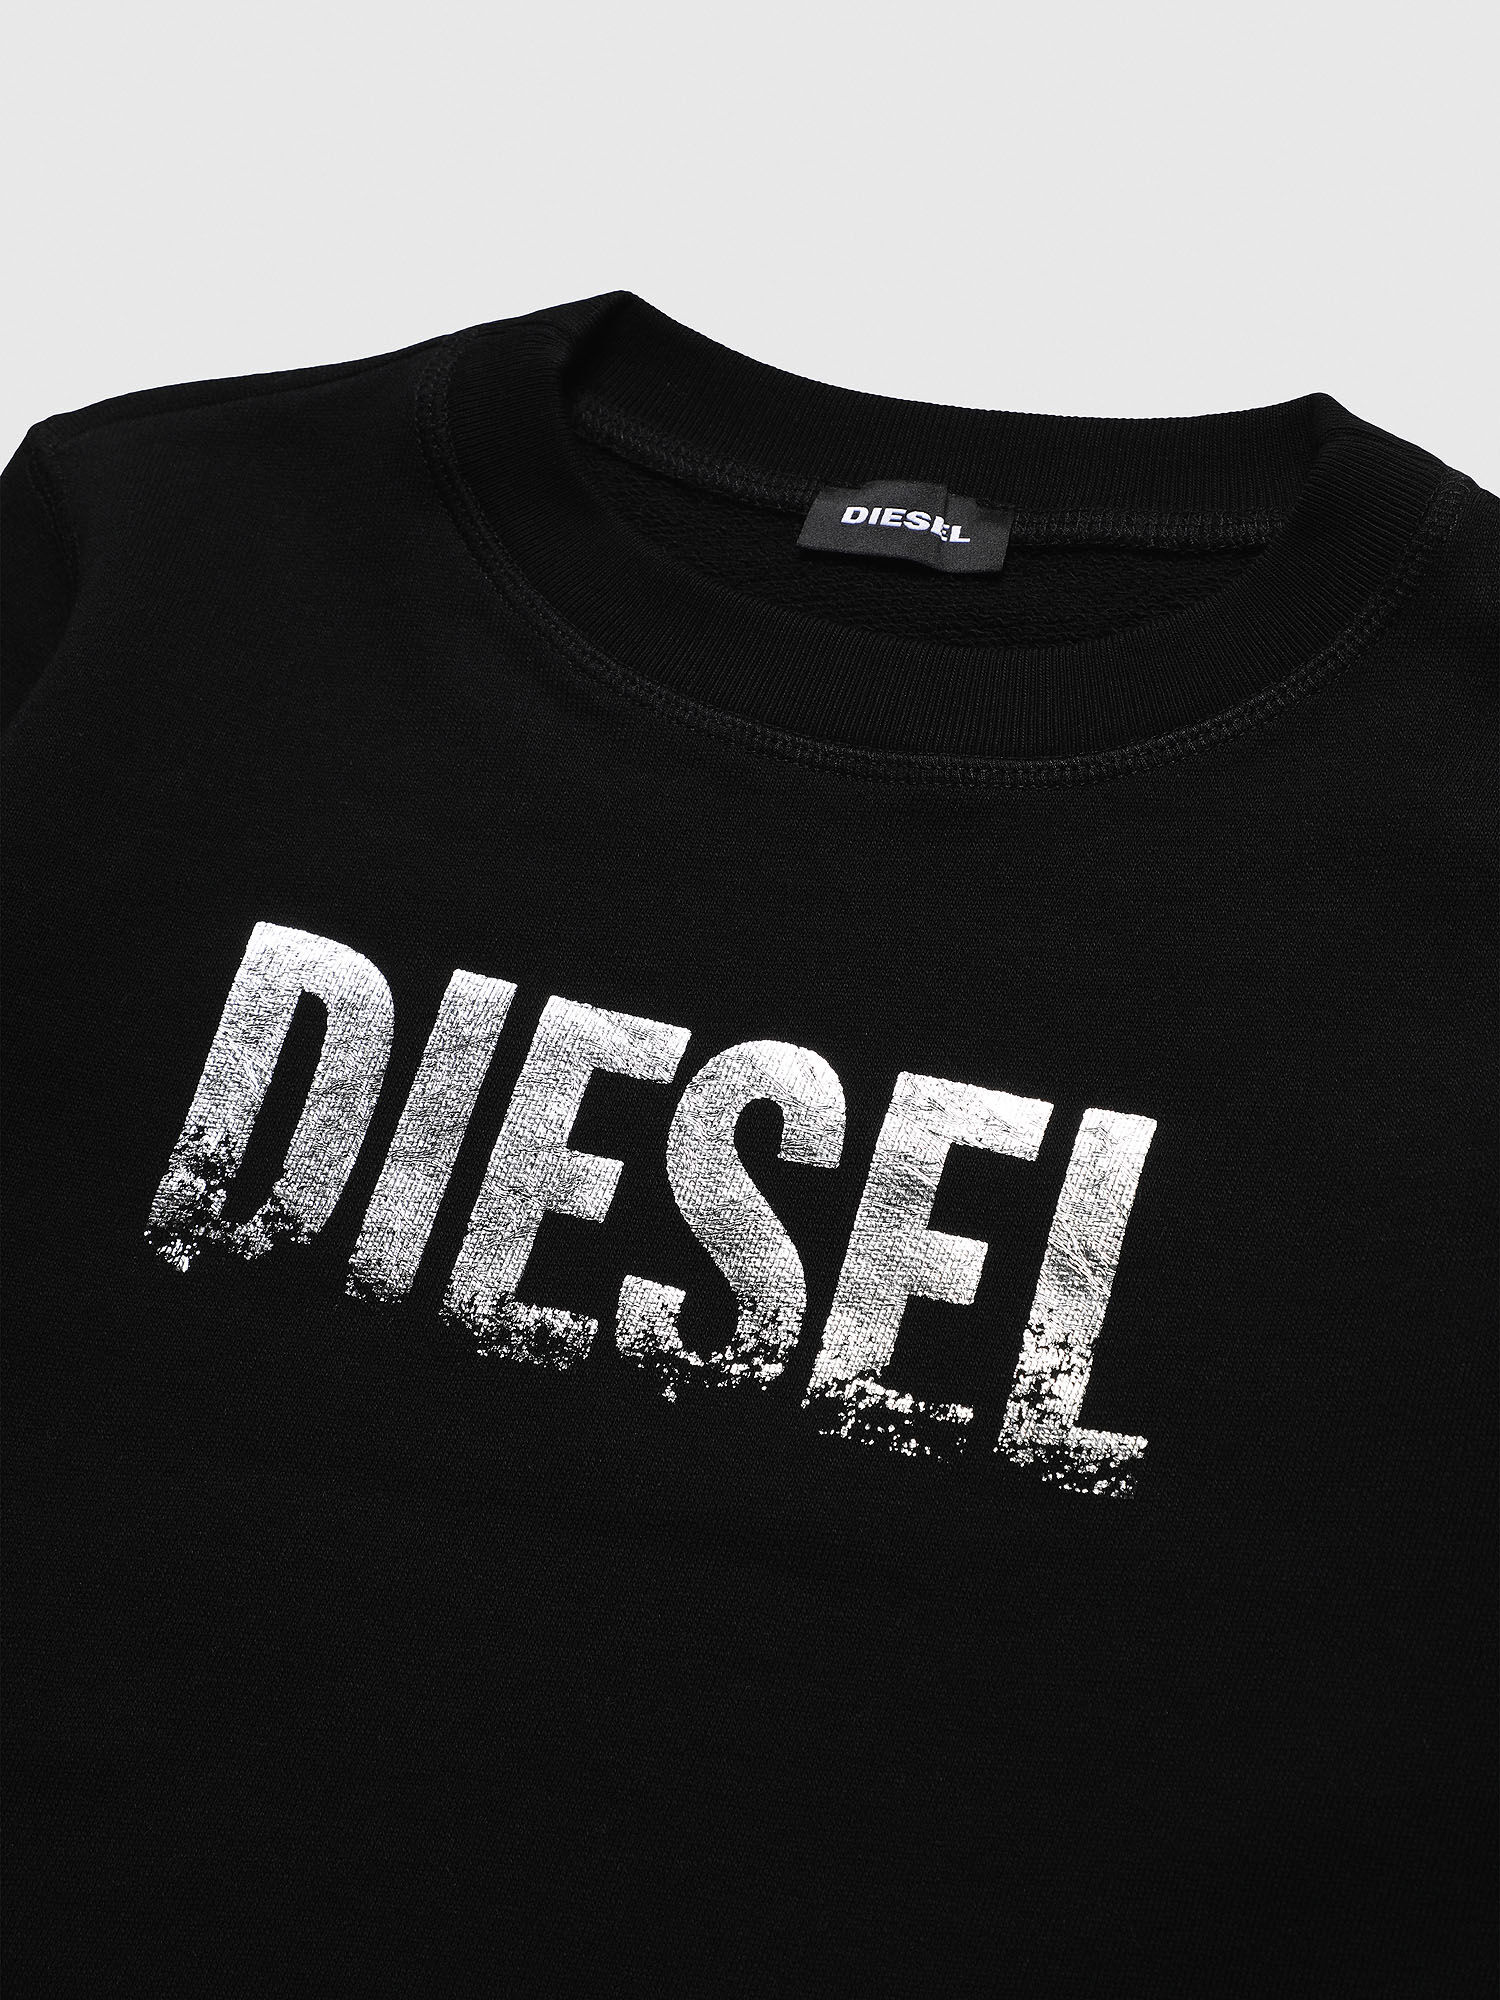 Diesel - SRALY, Black - Image 3